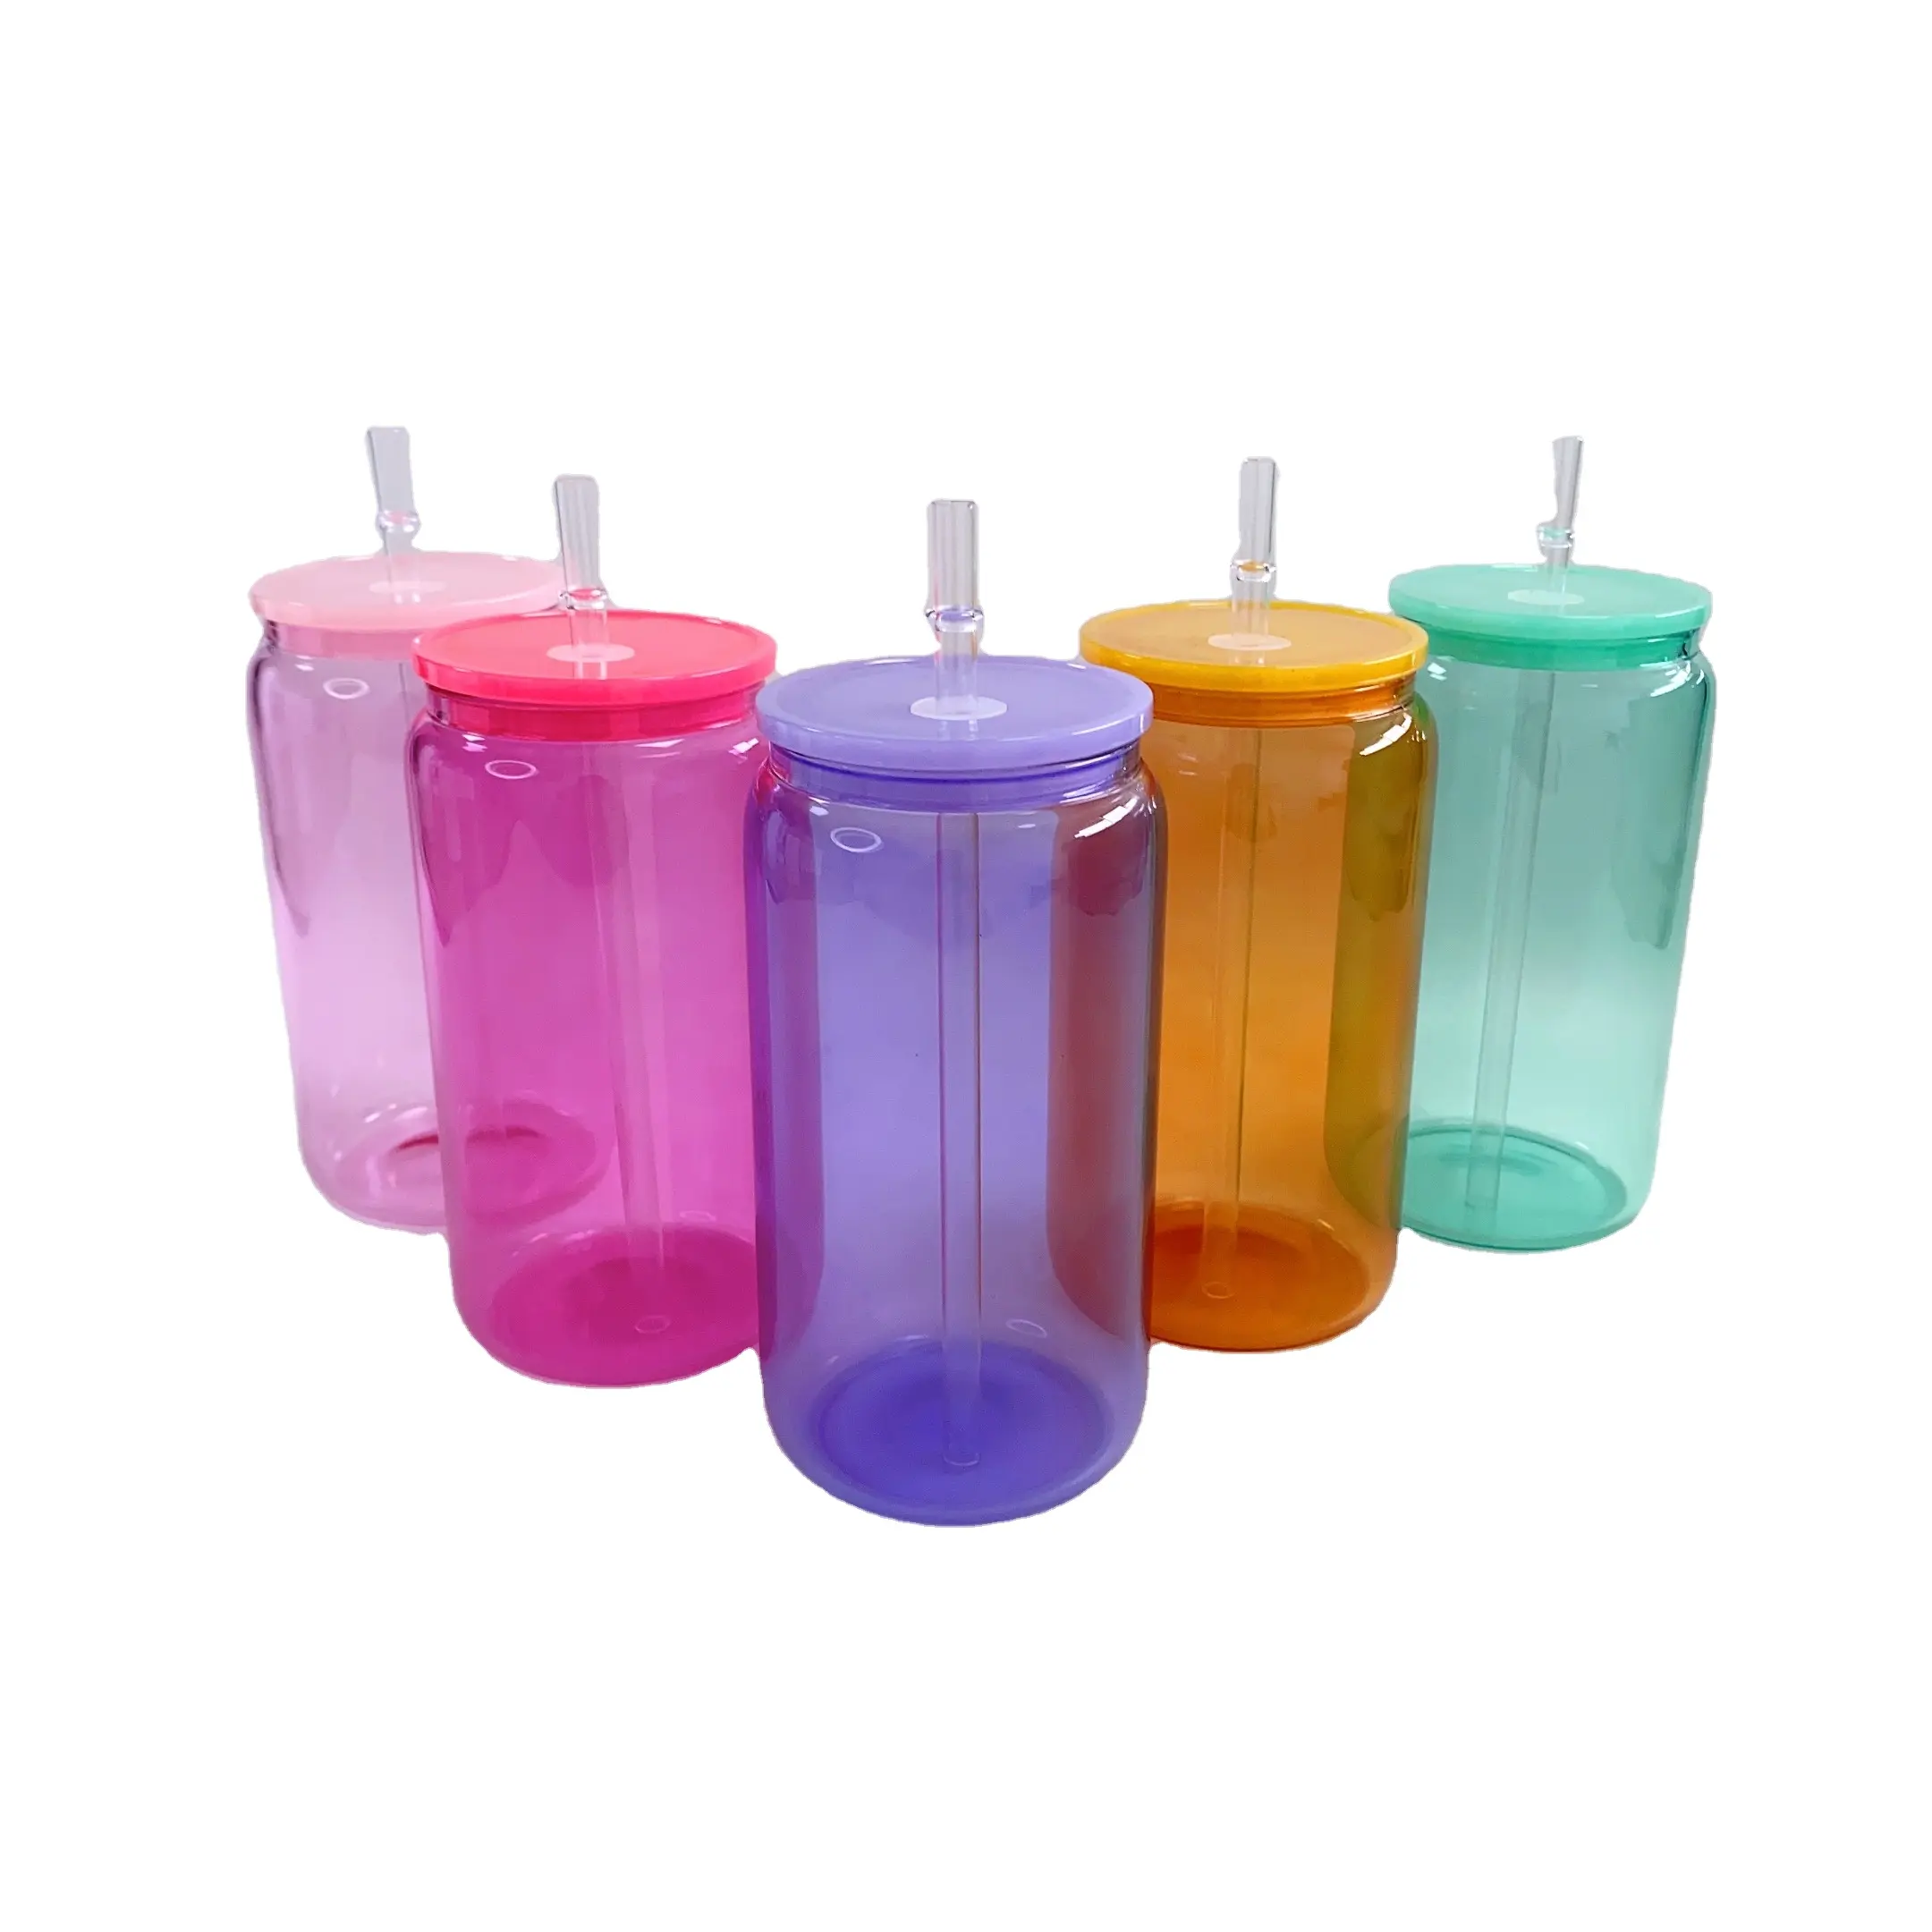 미국 창고 재고 16 온스 빈 승화 젤리 컬러 캔 유리 UV DTF 스티커에 대 한 다채로운 플라스틱 뚜껑